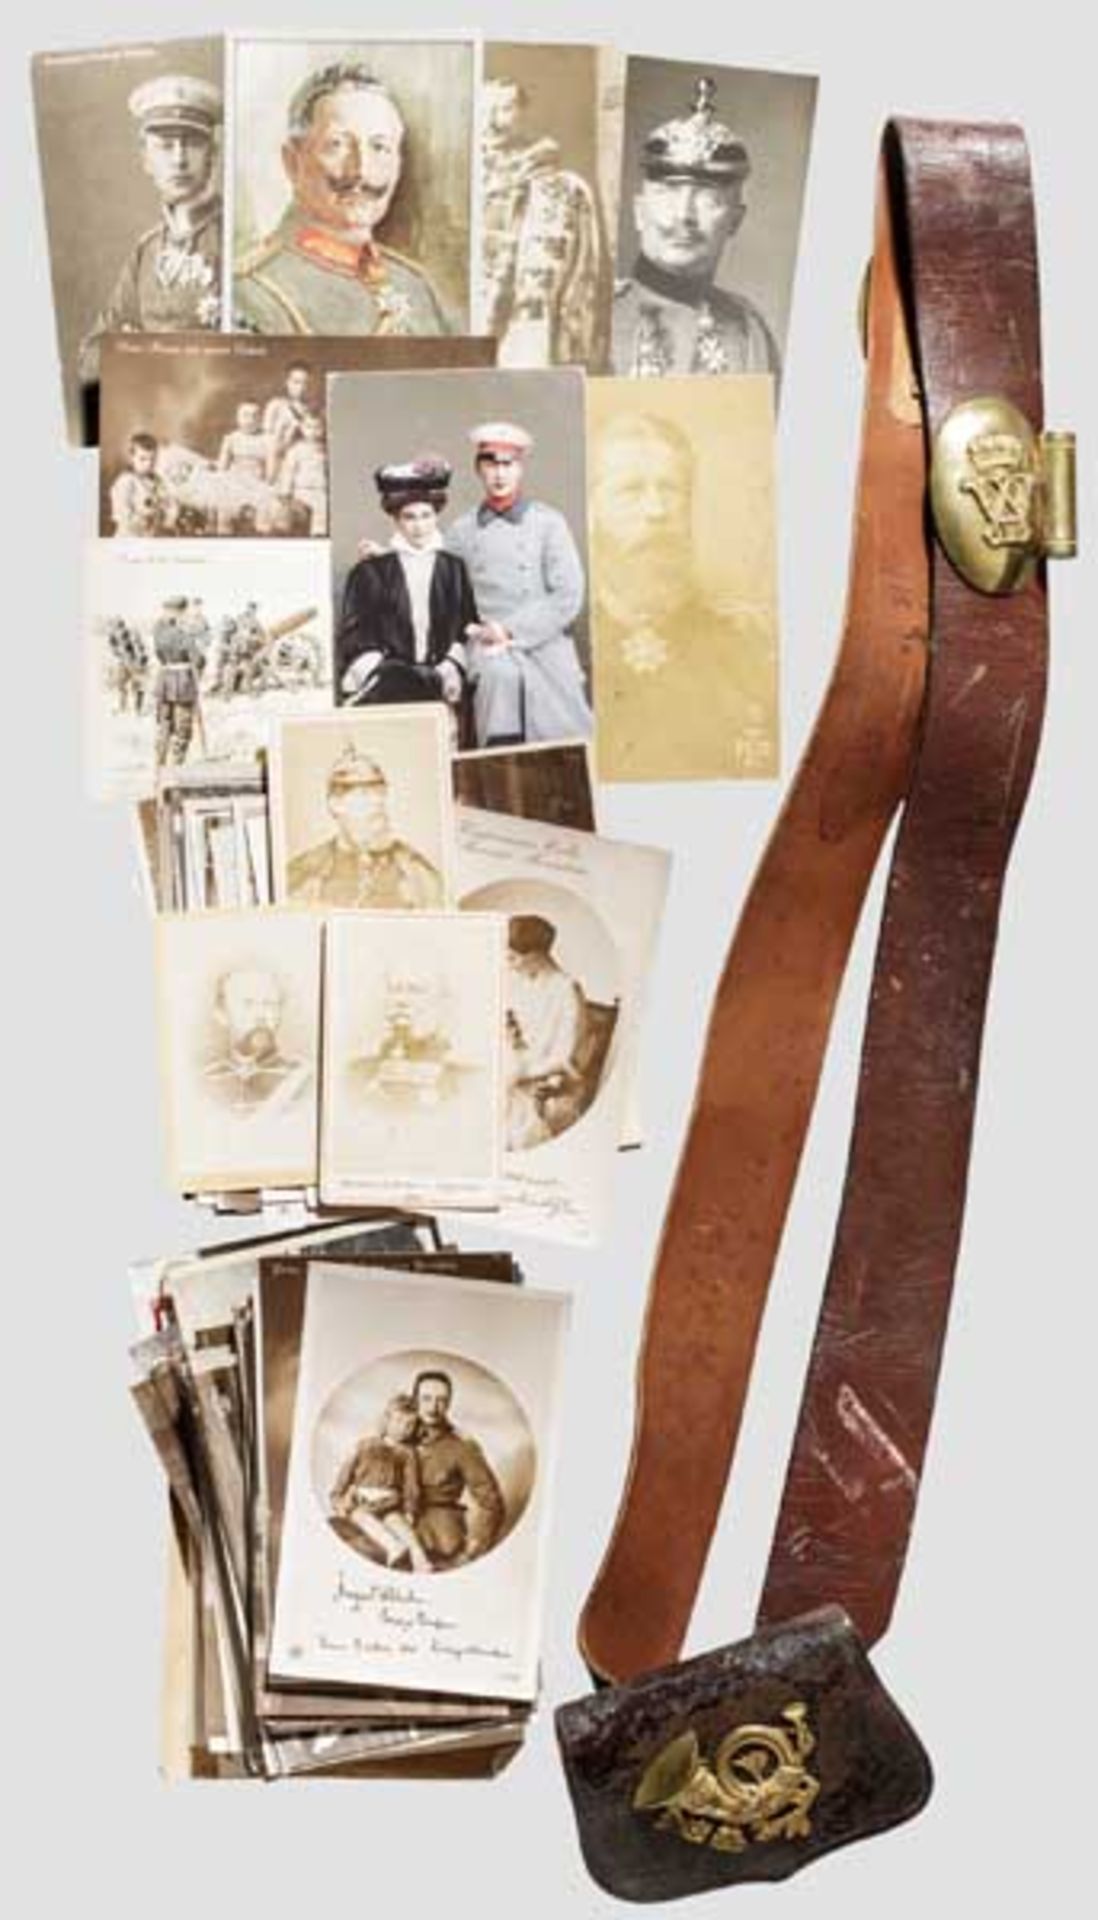 Kartuschkasten und Bandelier für Jagdbedienstete unter Kaiser Wilhelm II. Kartuschbehälter aus